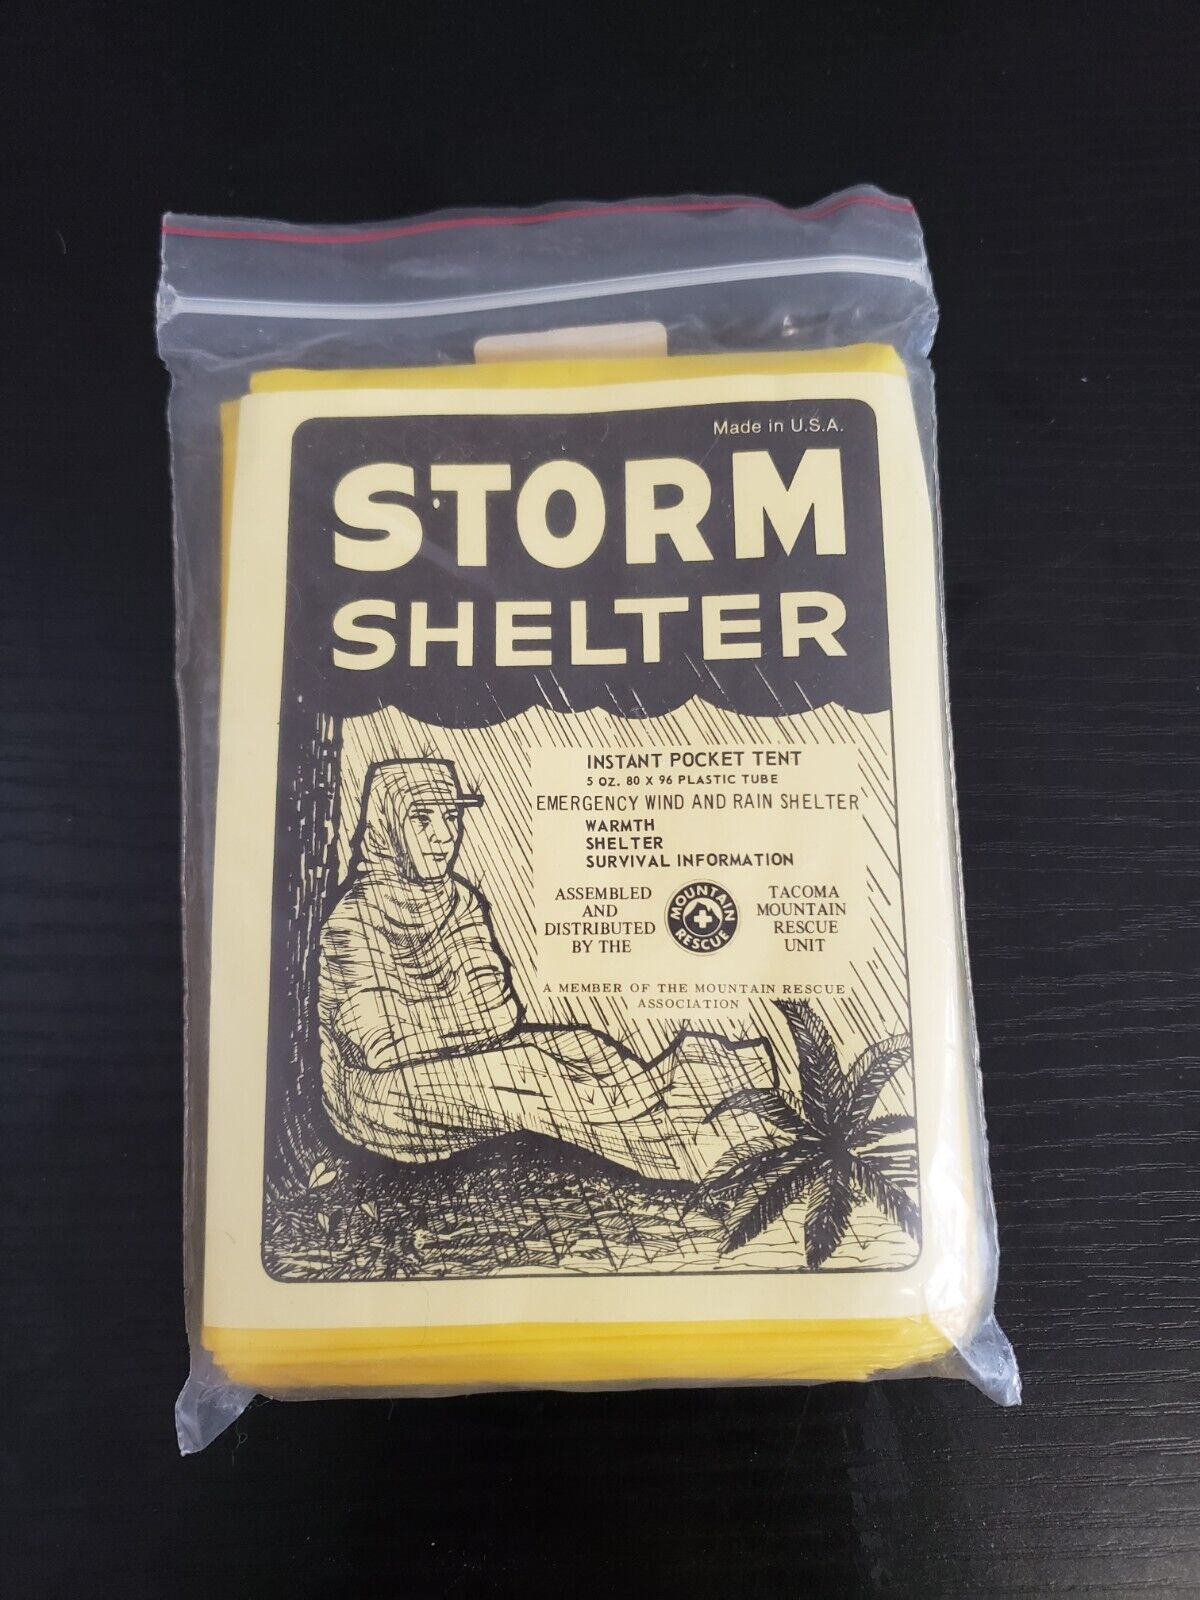 Survival Kit - Storm Shelter "Instant Pocket Tent" - Krb5B